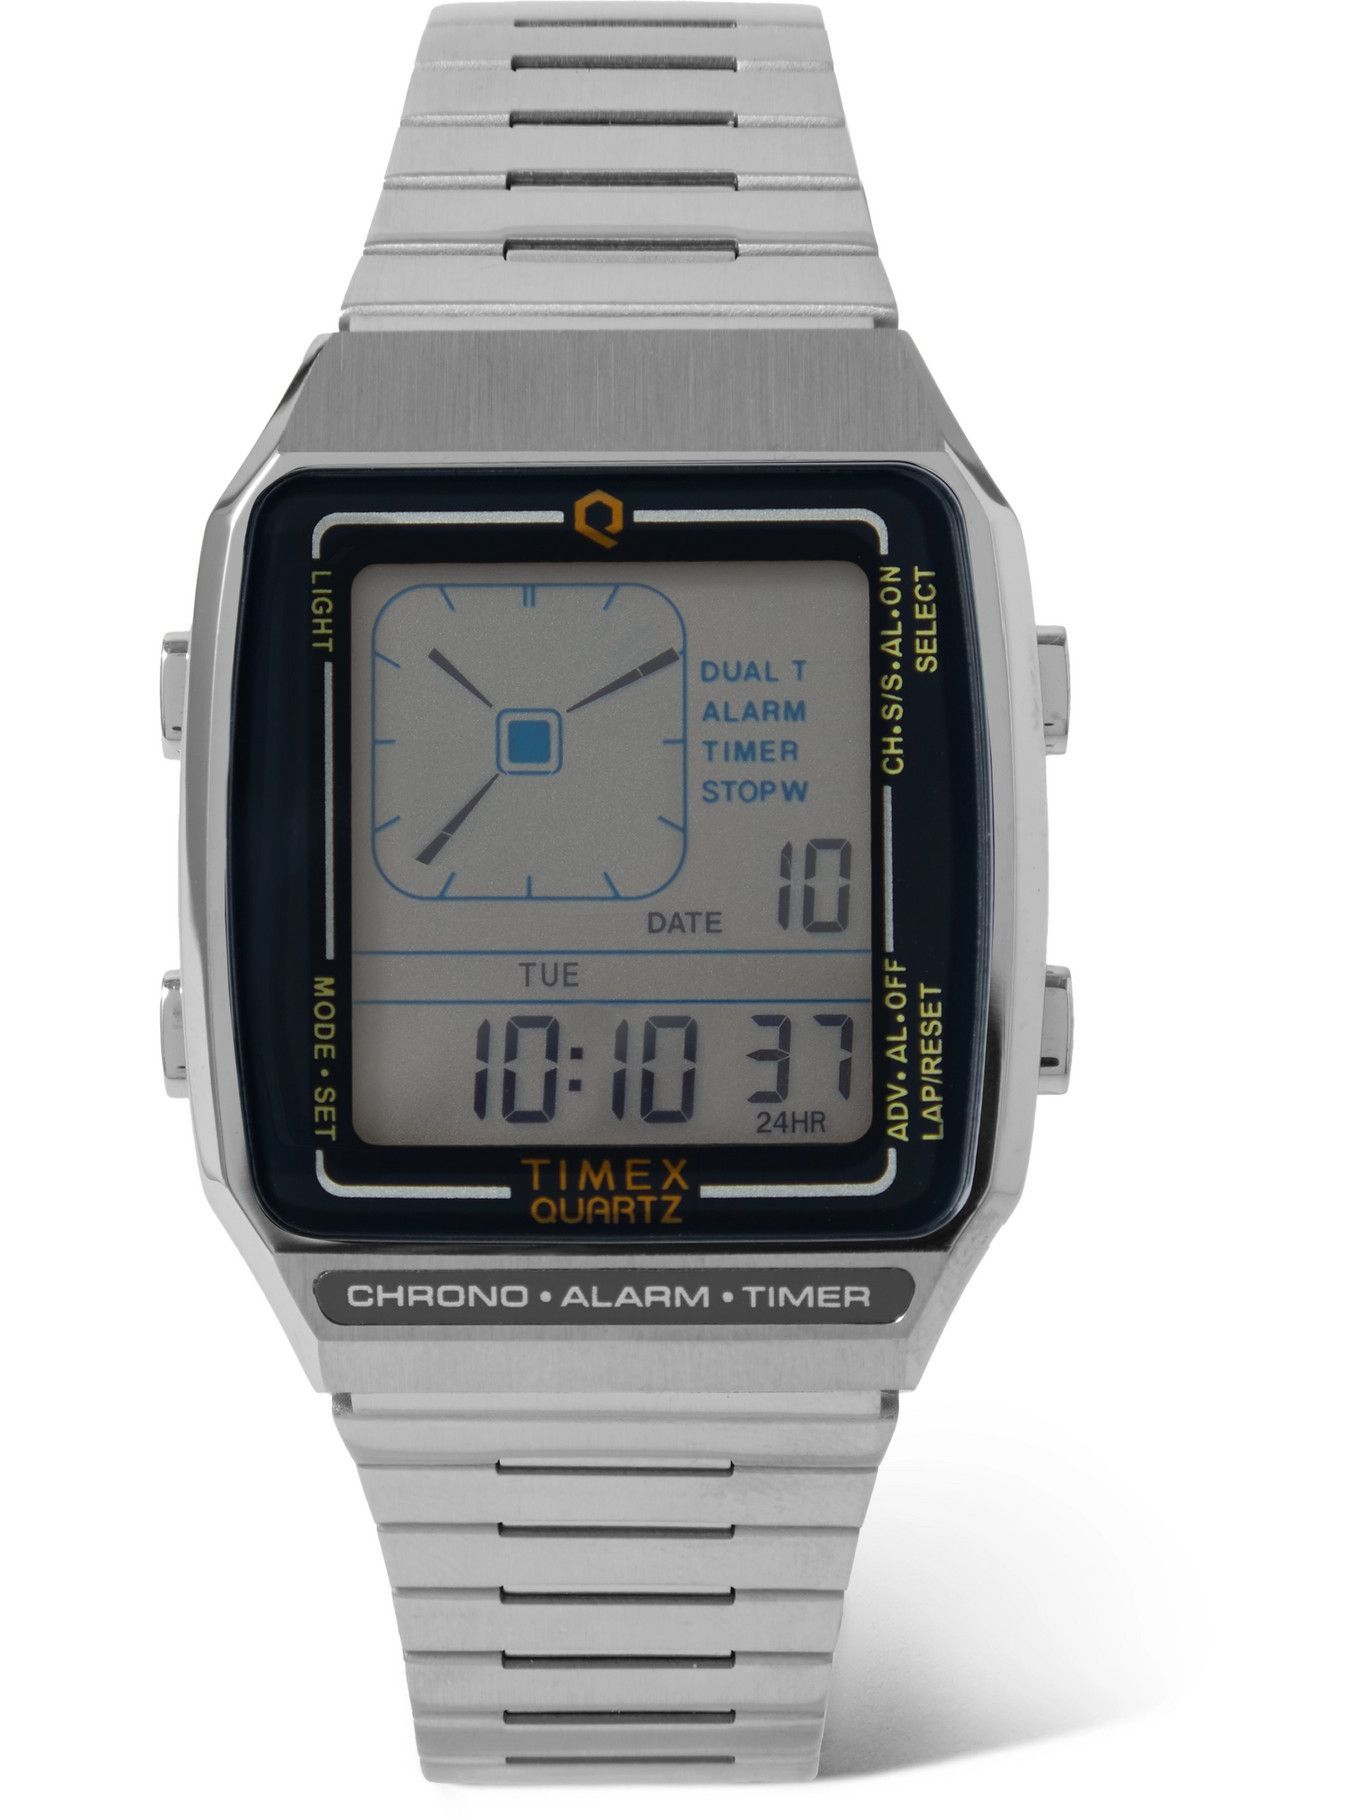 Timex - Q Timex Reissue LCA  Stainless Steel Digital Watch Timex